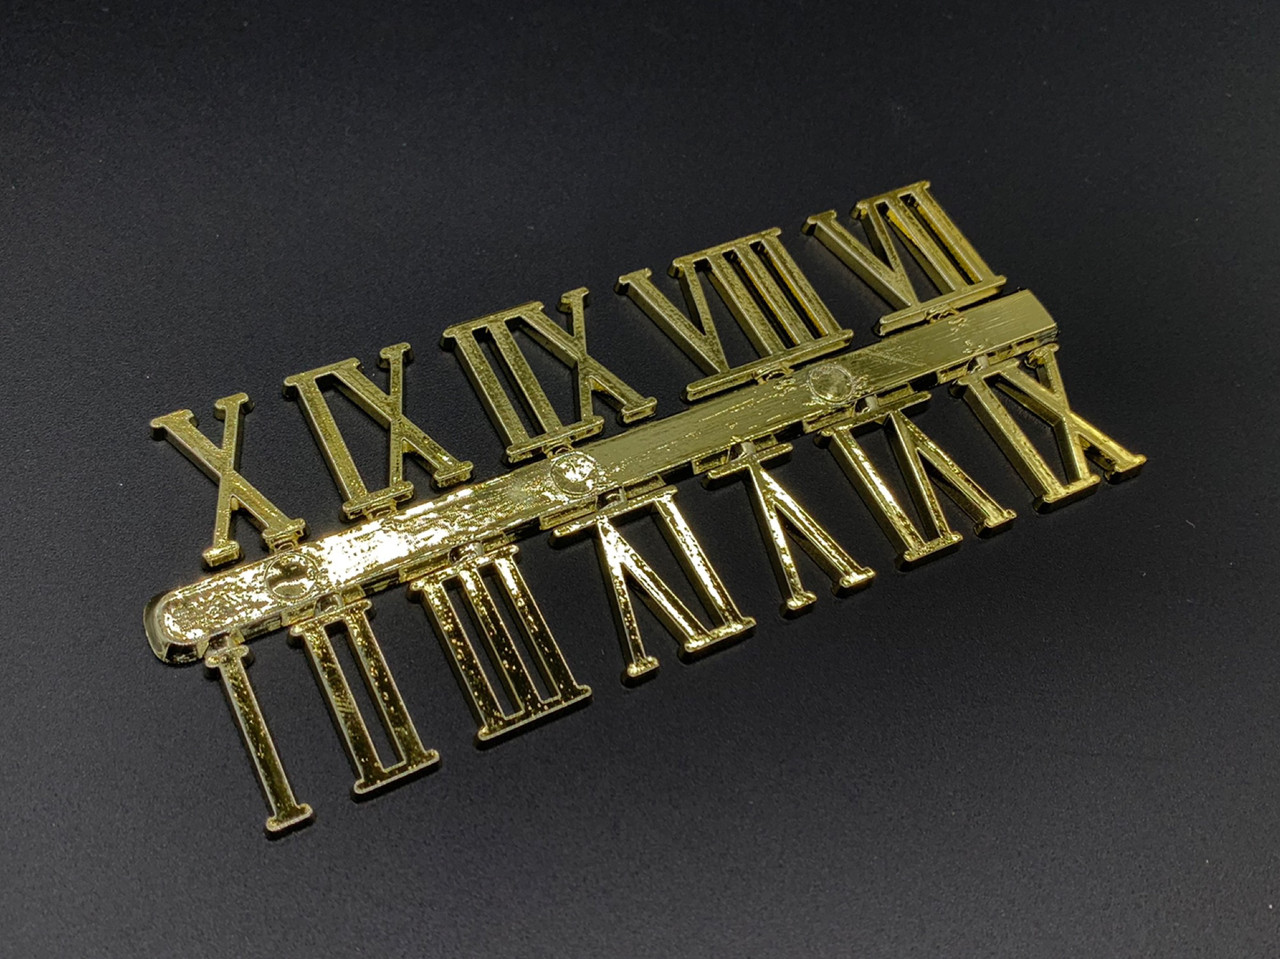 Римські цифри для самостійного виготовлення настінного годинника в золотому кольорі висотою 23 мм